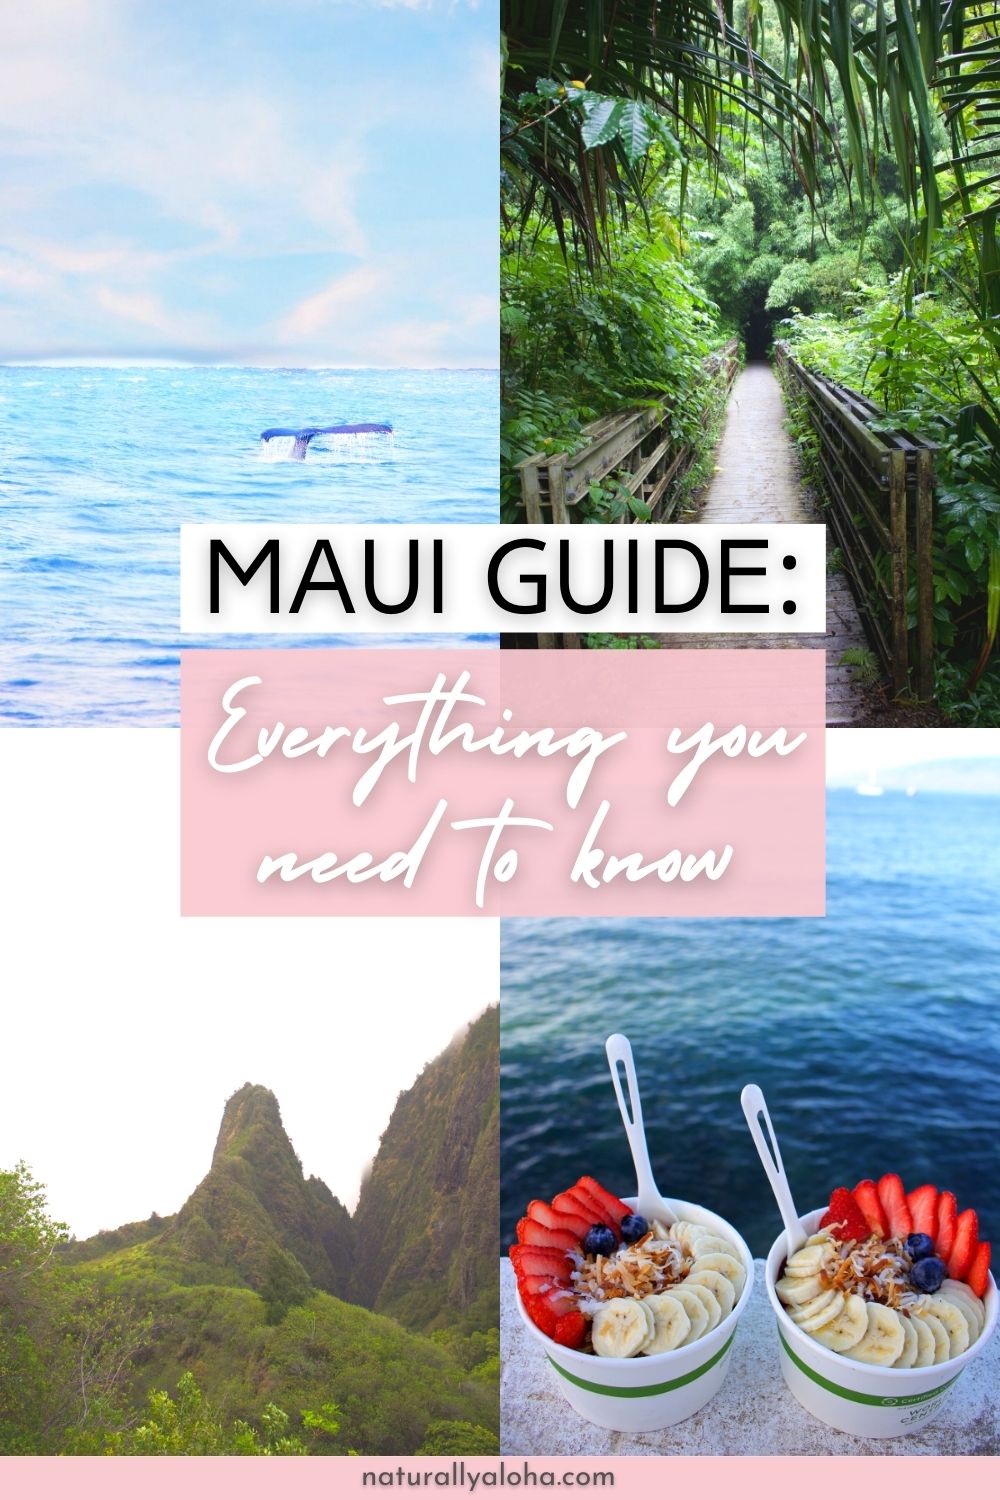 maui travel guide reddit